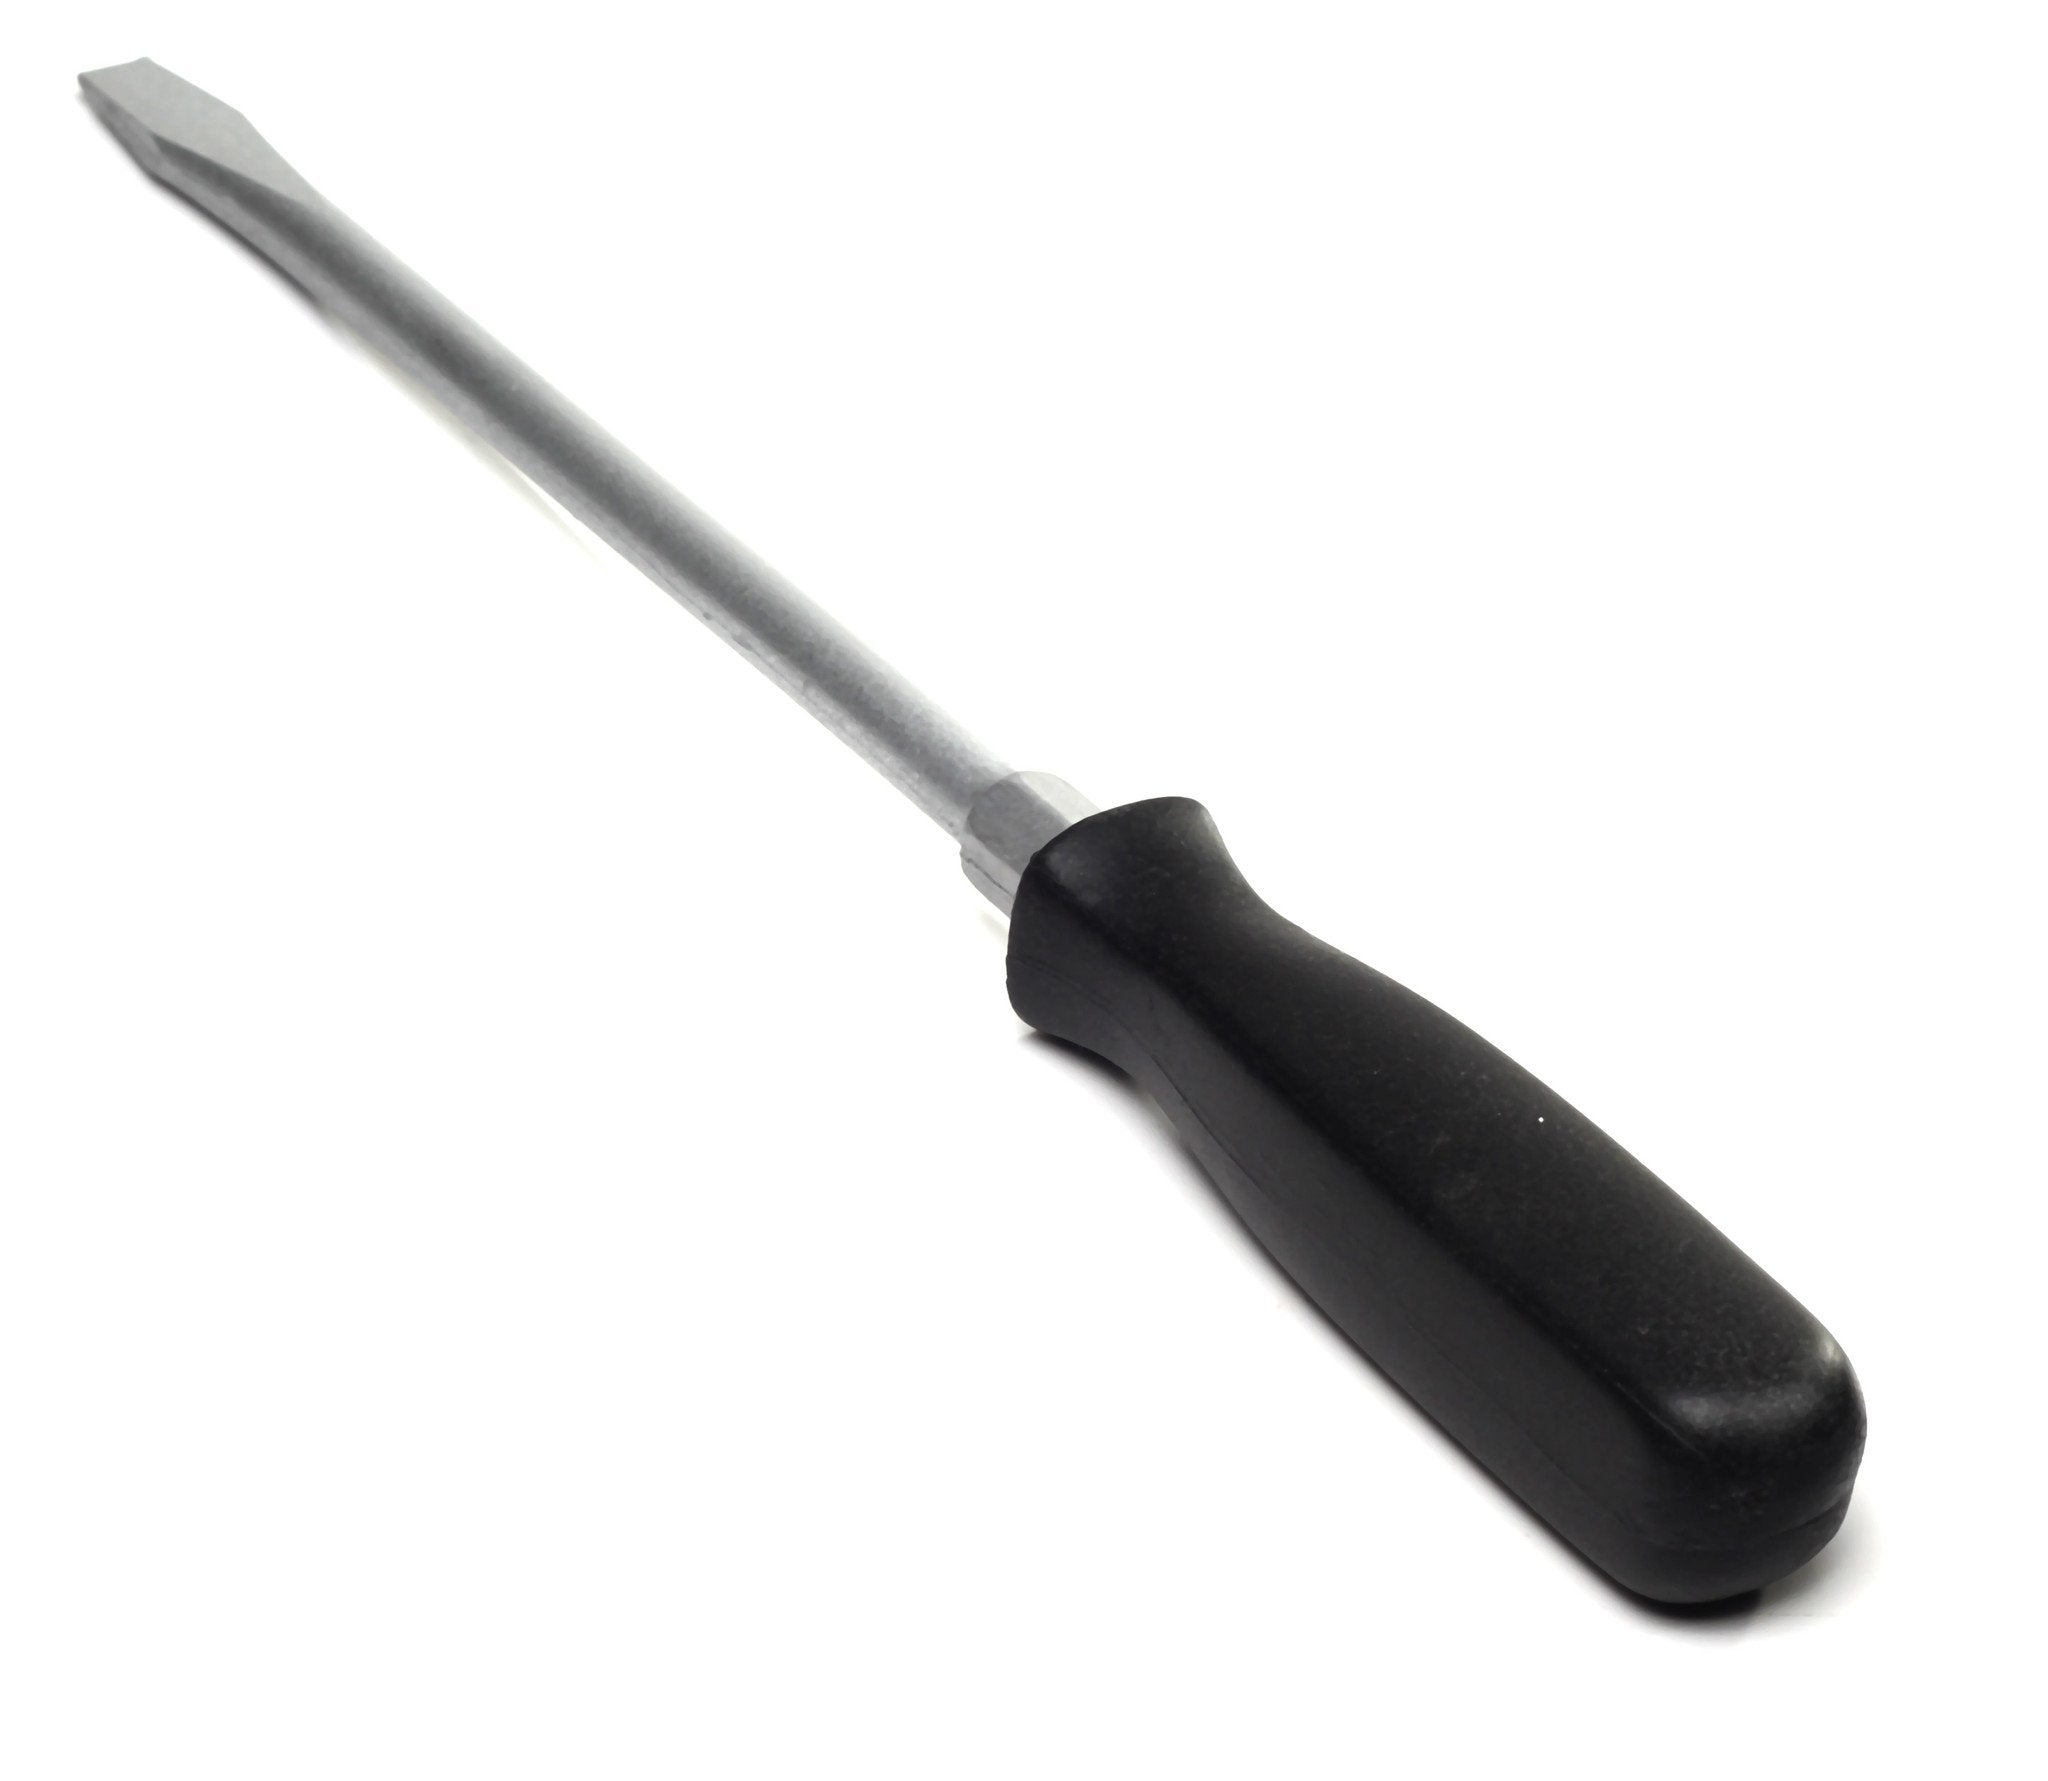 Rigid Plastic Screwdriver Prop - SILVER / BLACK - Silver Head with Black Handle